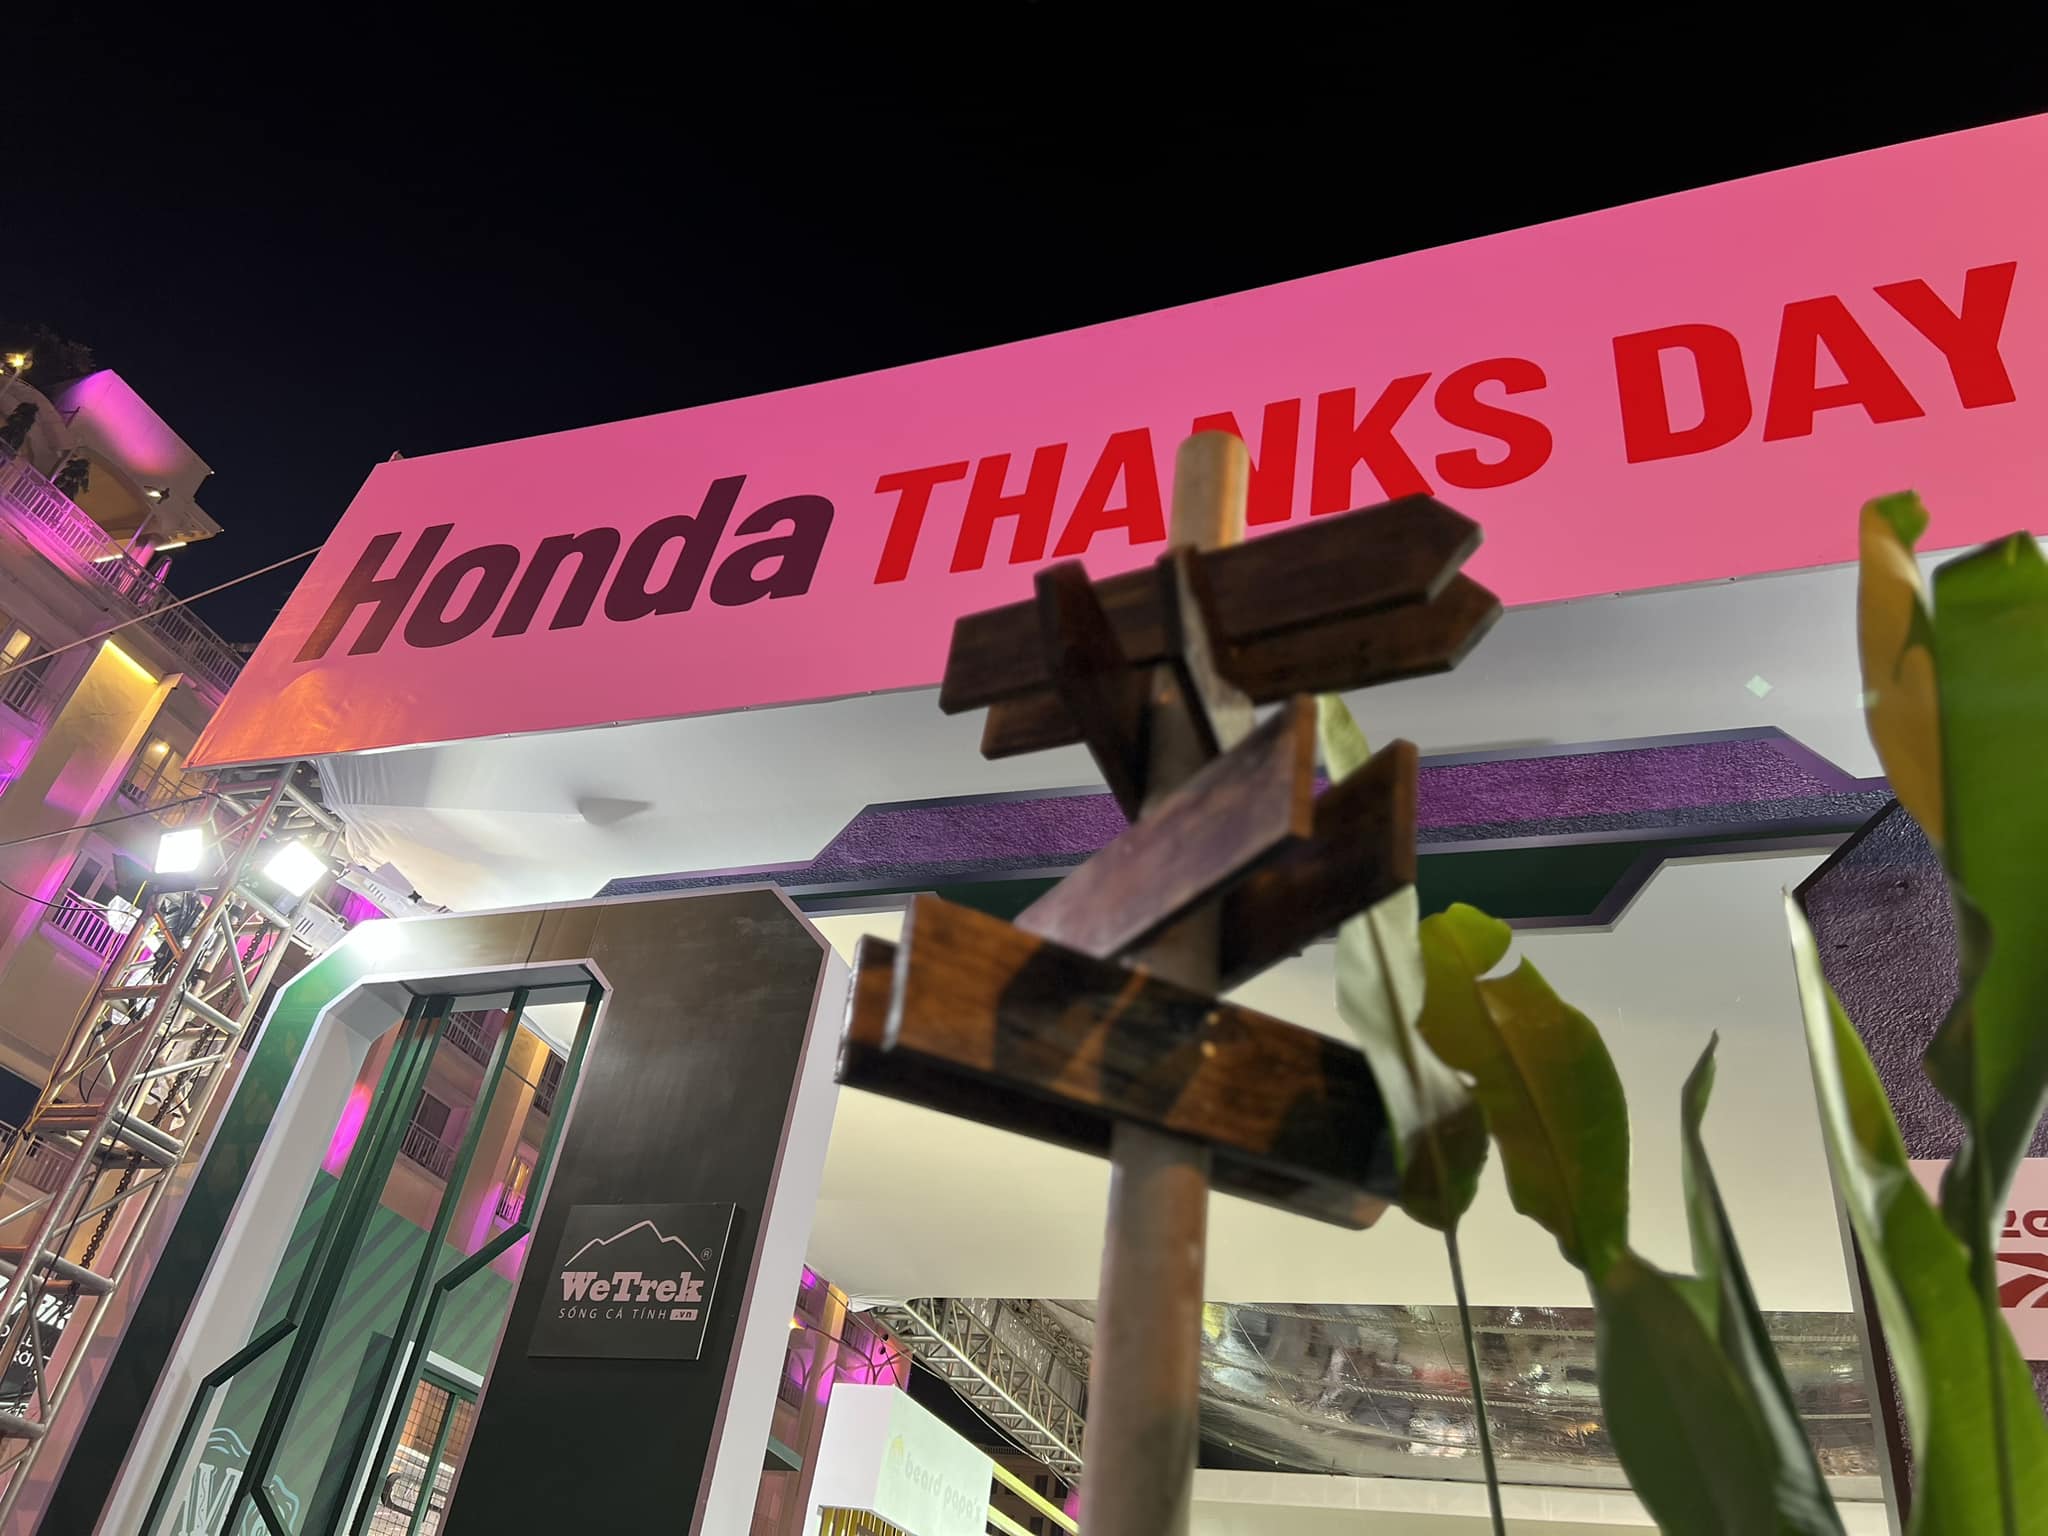 Có thể là hình ảnh về văn bản cho biết ''Honda THA NKS DAY Vik WeTrek 